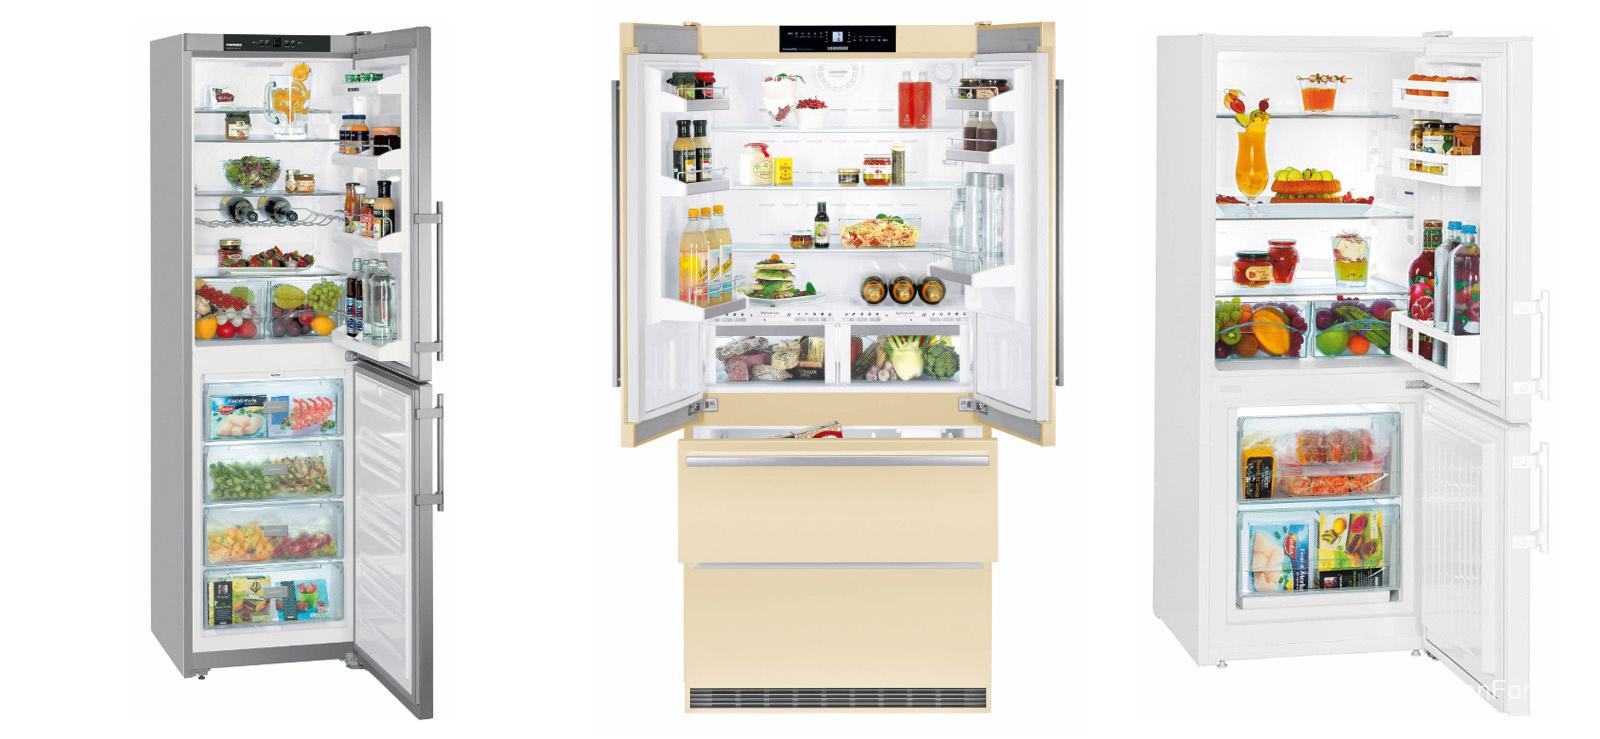 Рейтинг холодильников 2020